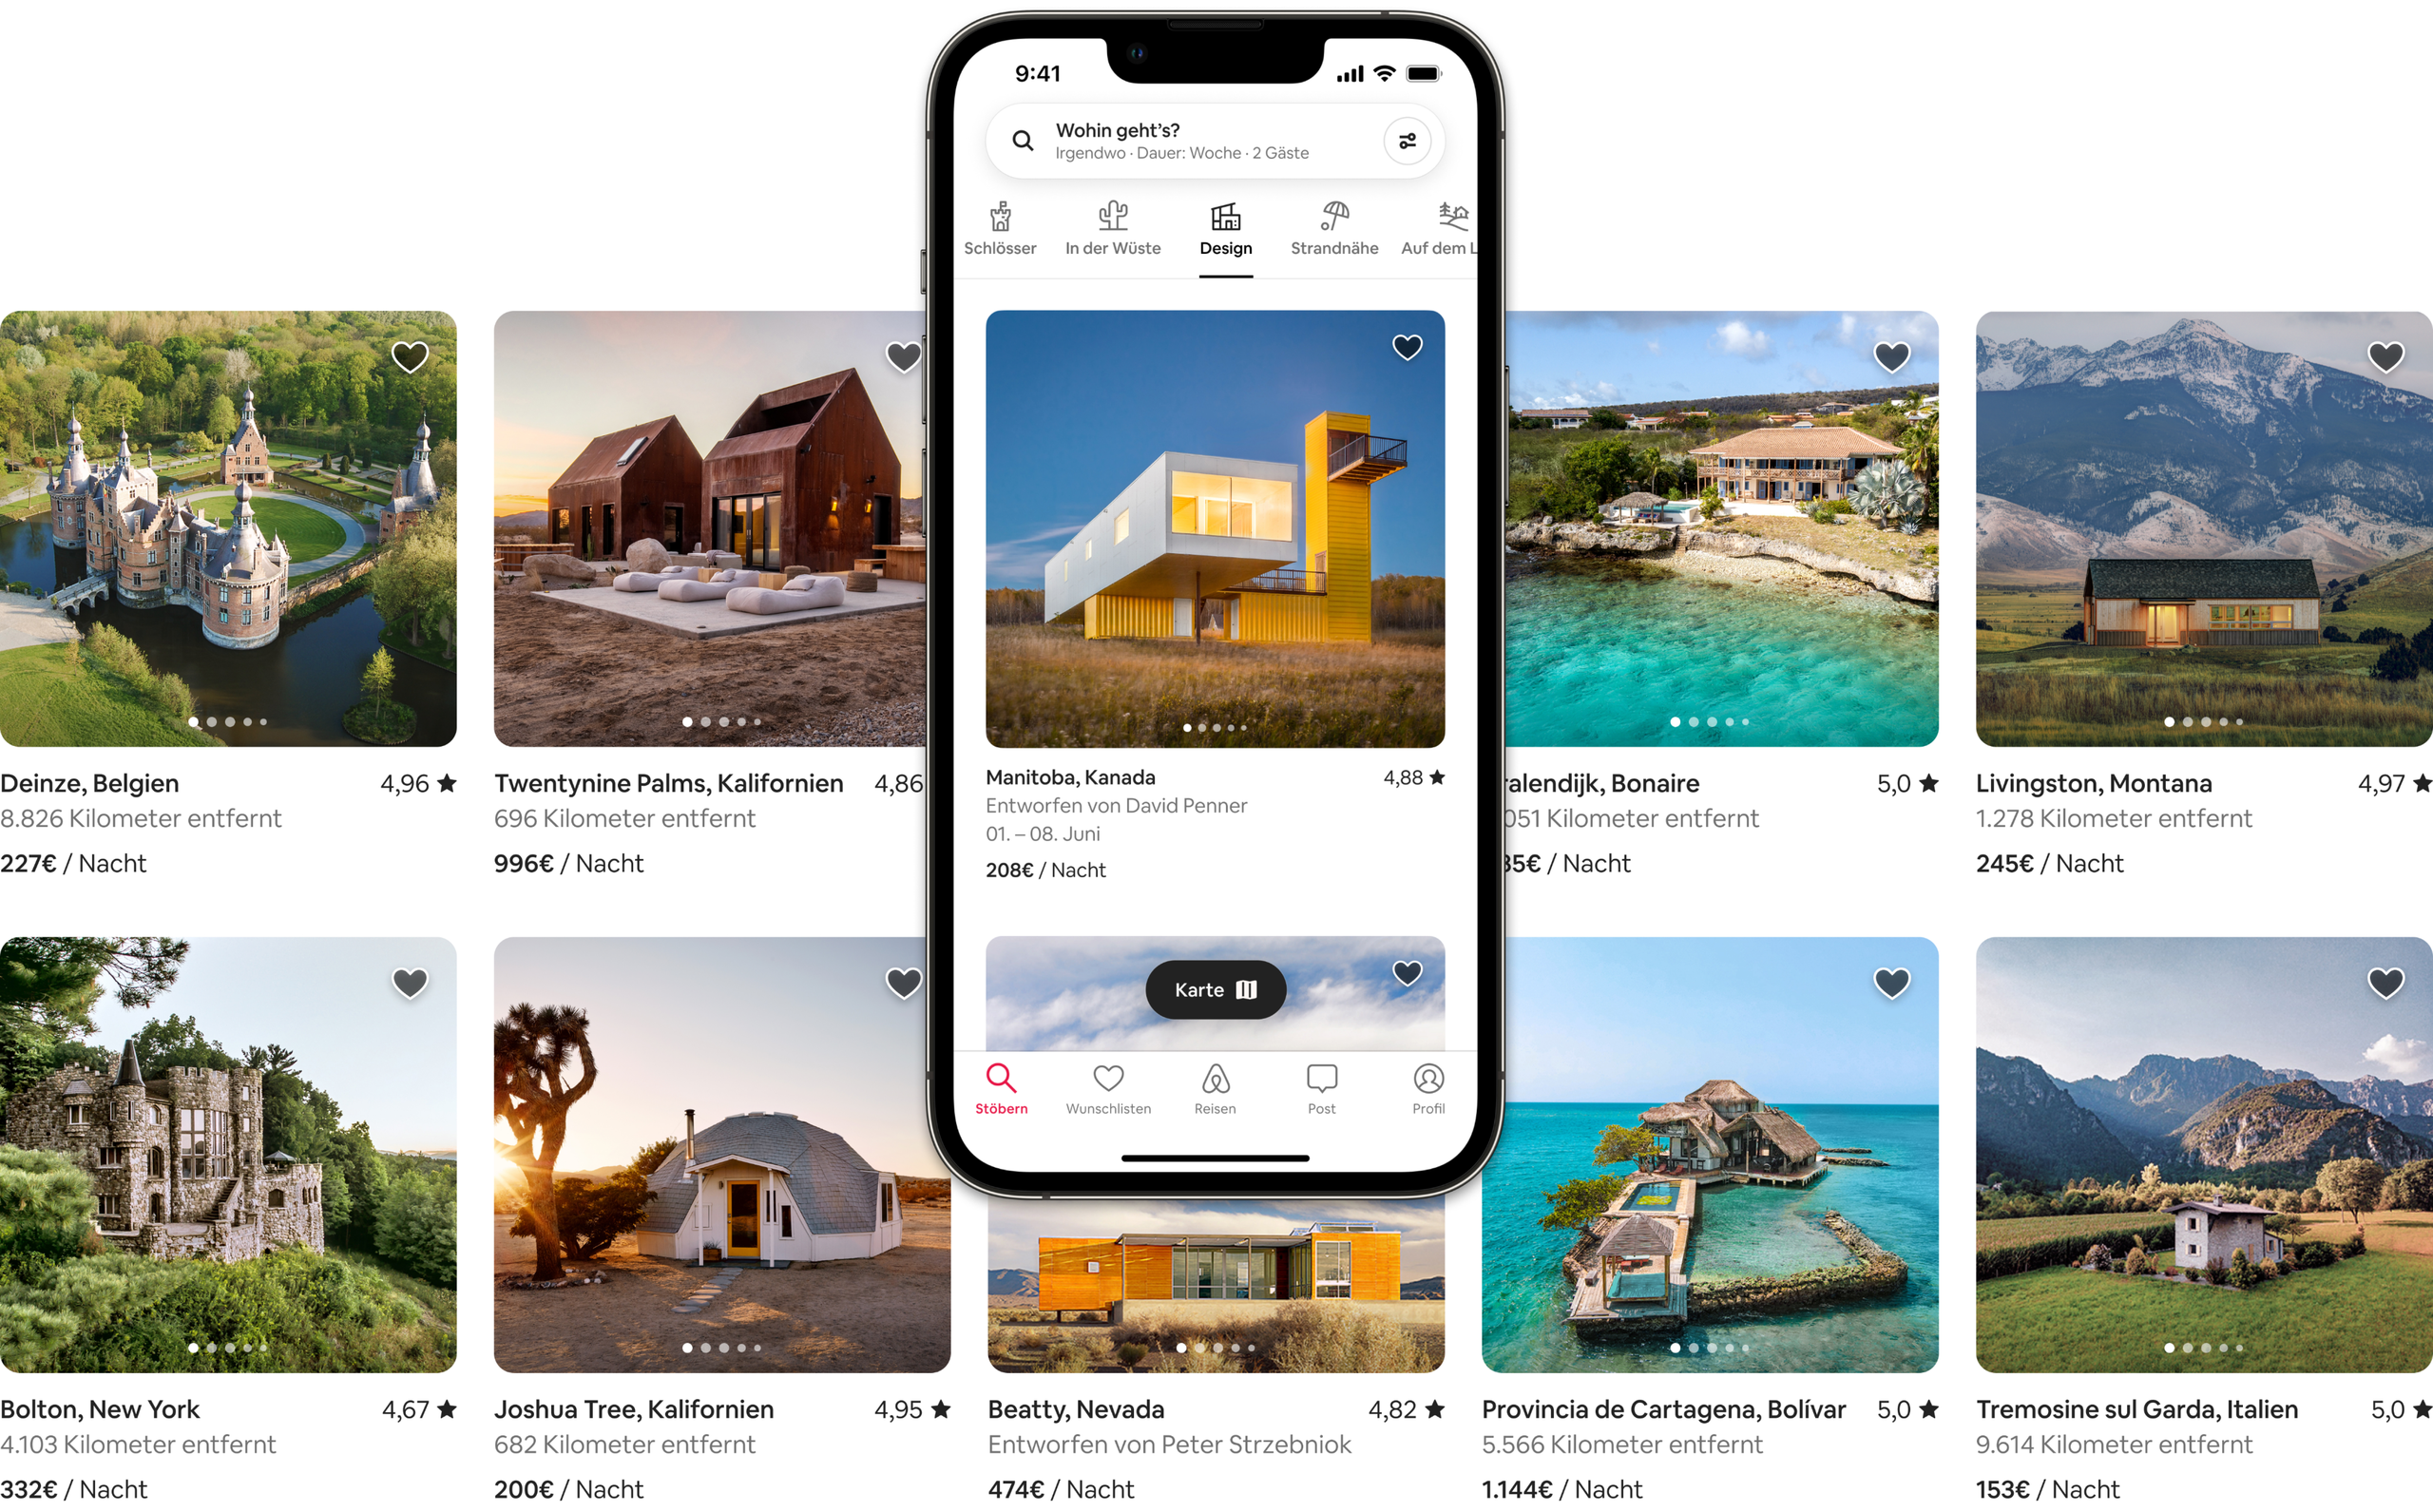 Zwei Reihen wunderschöner Inseratsfotos zeigen Unterkünfte der Kategorien „Schlösser“, „In der Wüste“, „Design“, „Strandnähe“ und „Auf dem Land“ von Airbnb. Eines der Inserate ist auf einem Handy-Bildschirm zu sehen, um zu veranschaulichen, wie die Inserate in der Airbnb-App angezeigt werden.